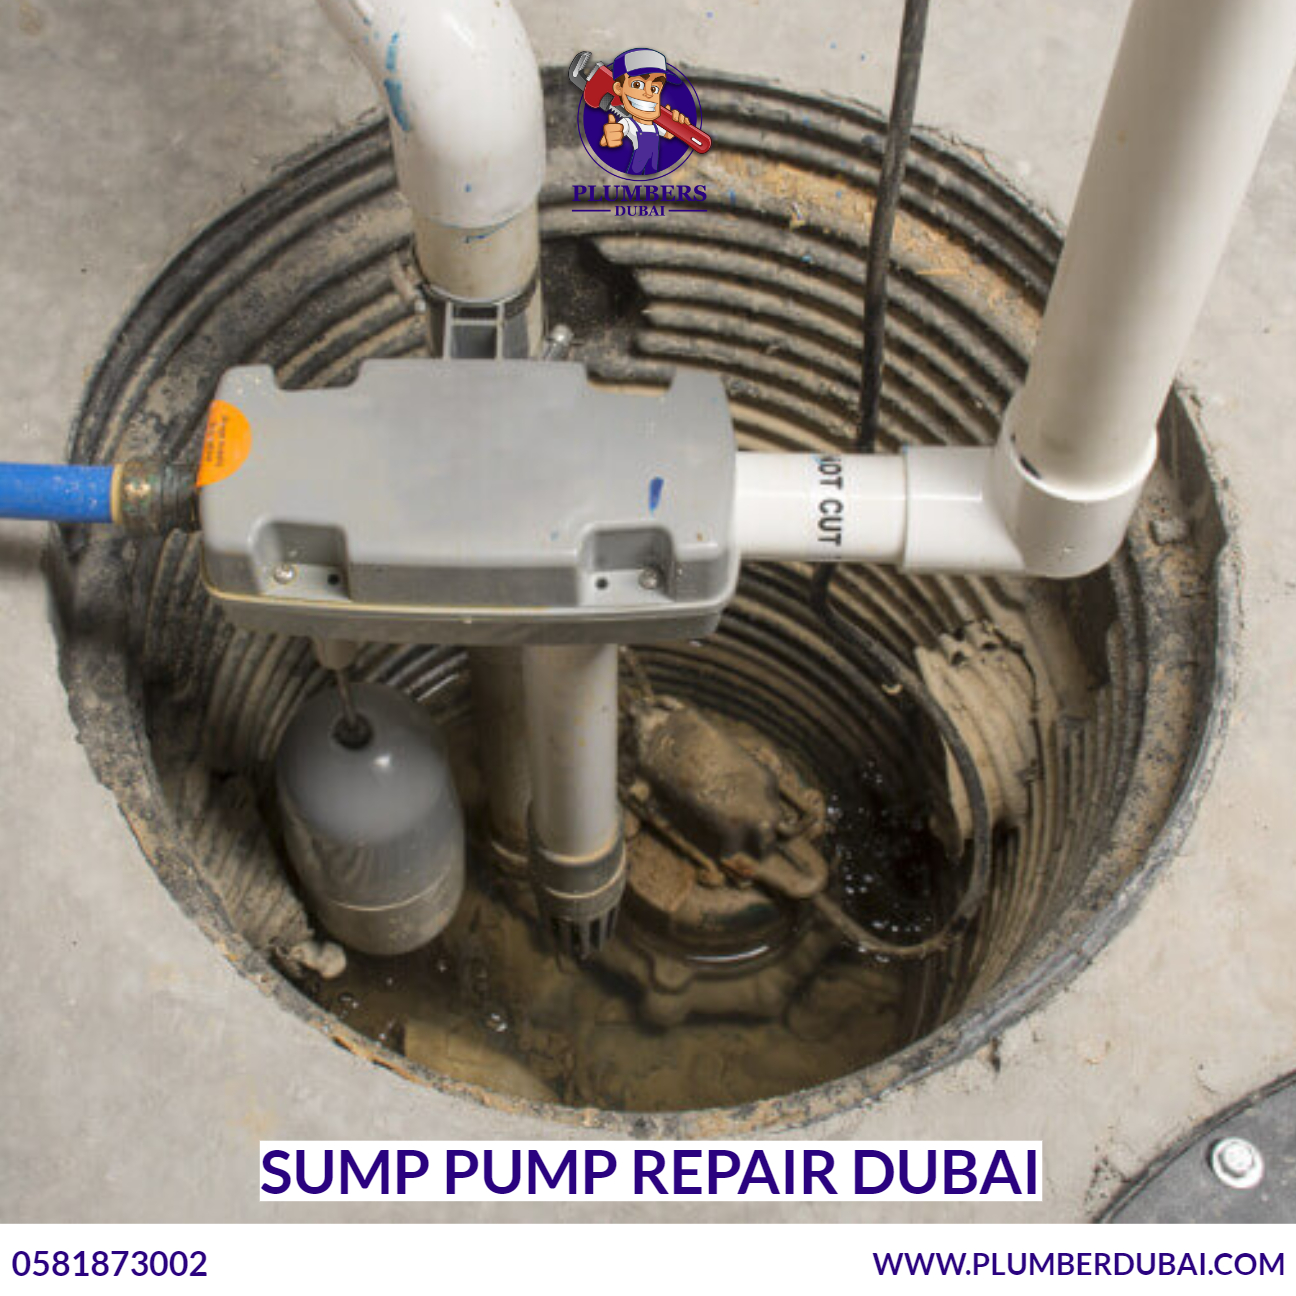 Sump Pump Repair Dubai